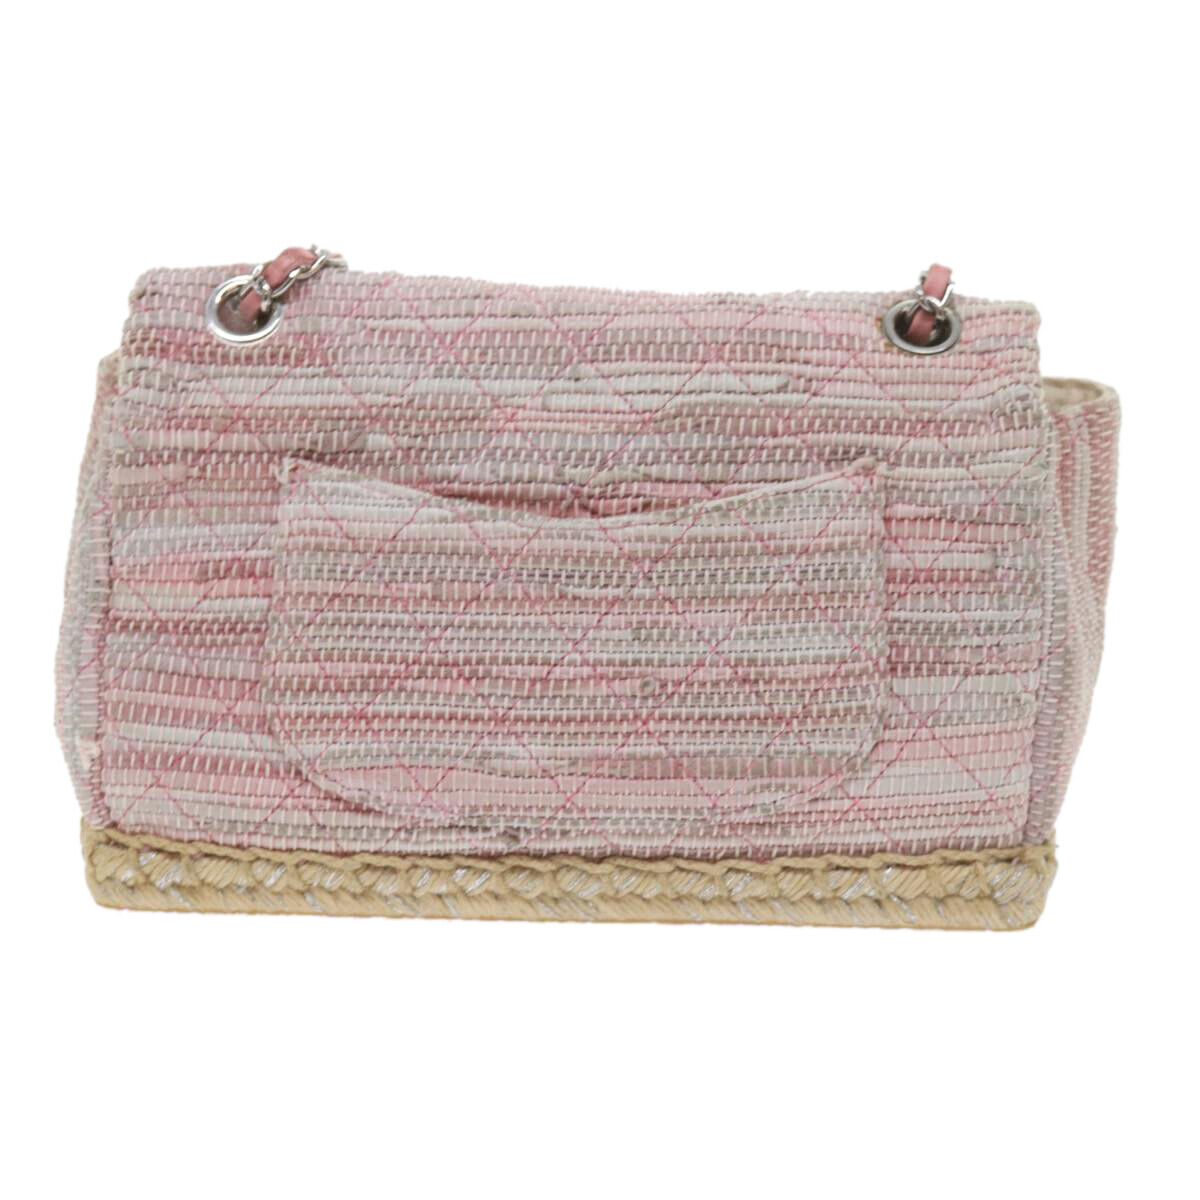 CHANEL Matelasse Chain Shoulder Bag Leather Pink … - image 2